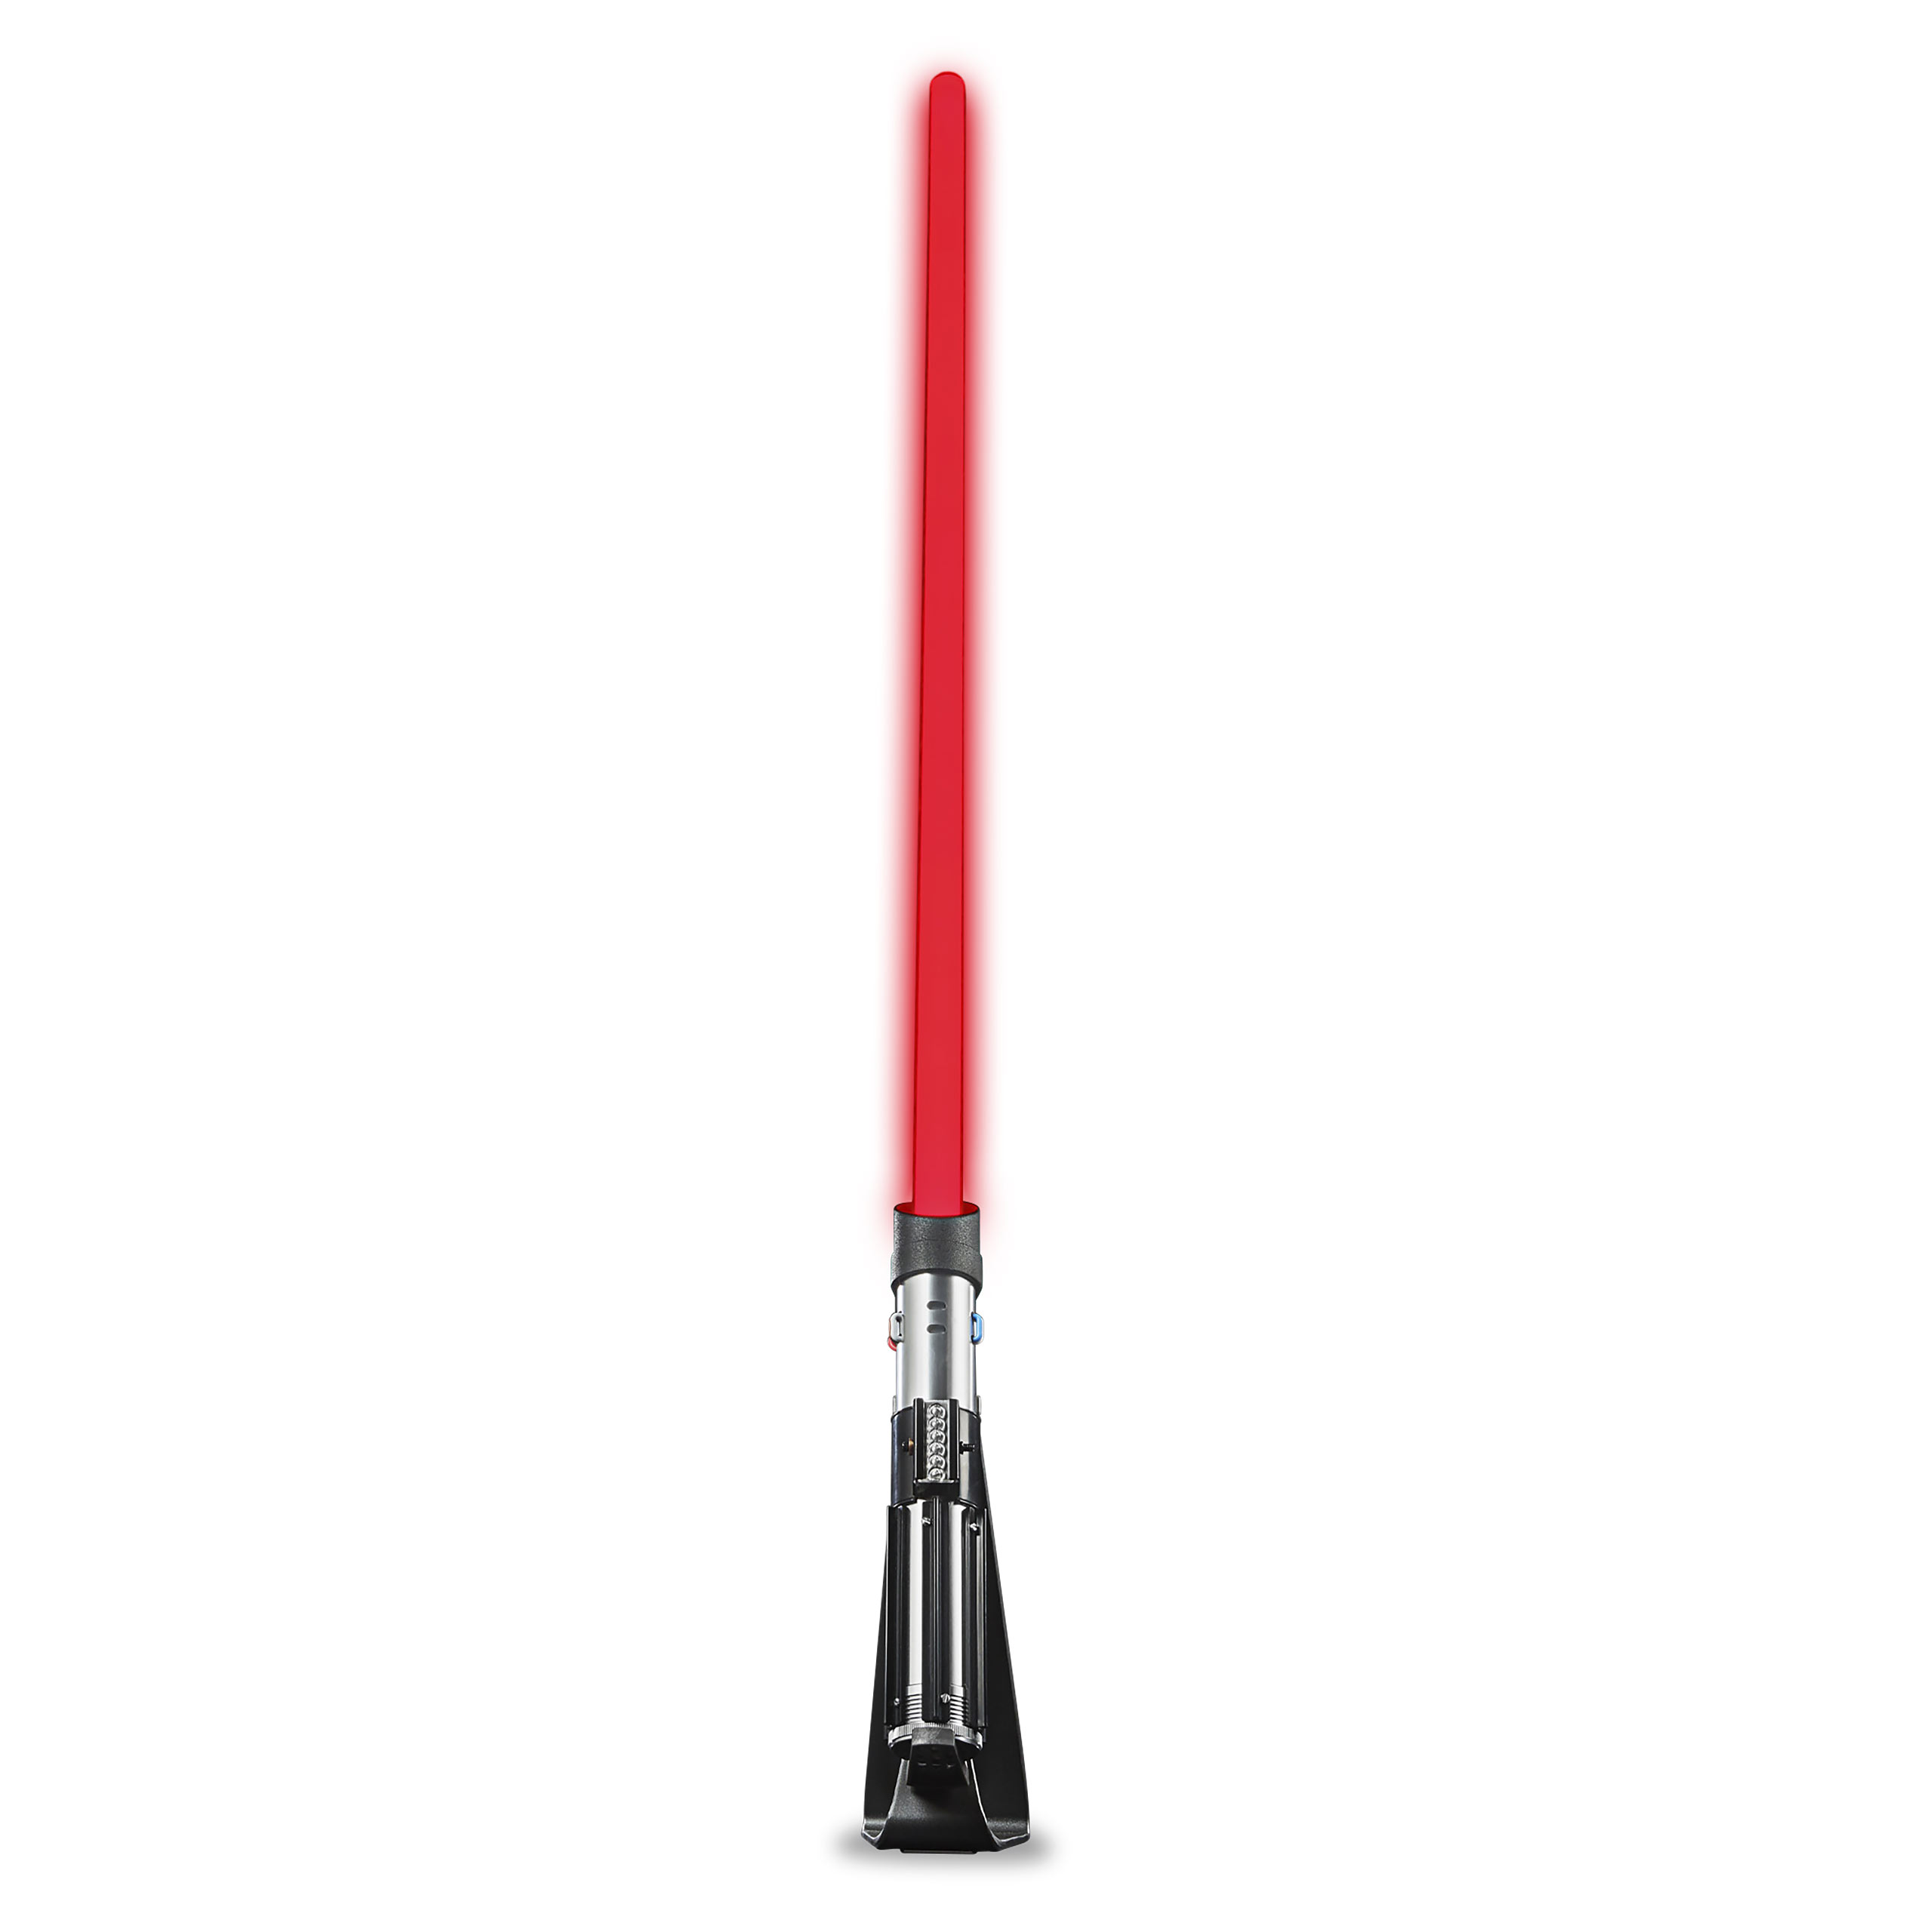 Star Wars - Darth Vader Force FX Elite Lichtschwert